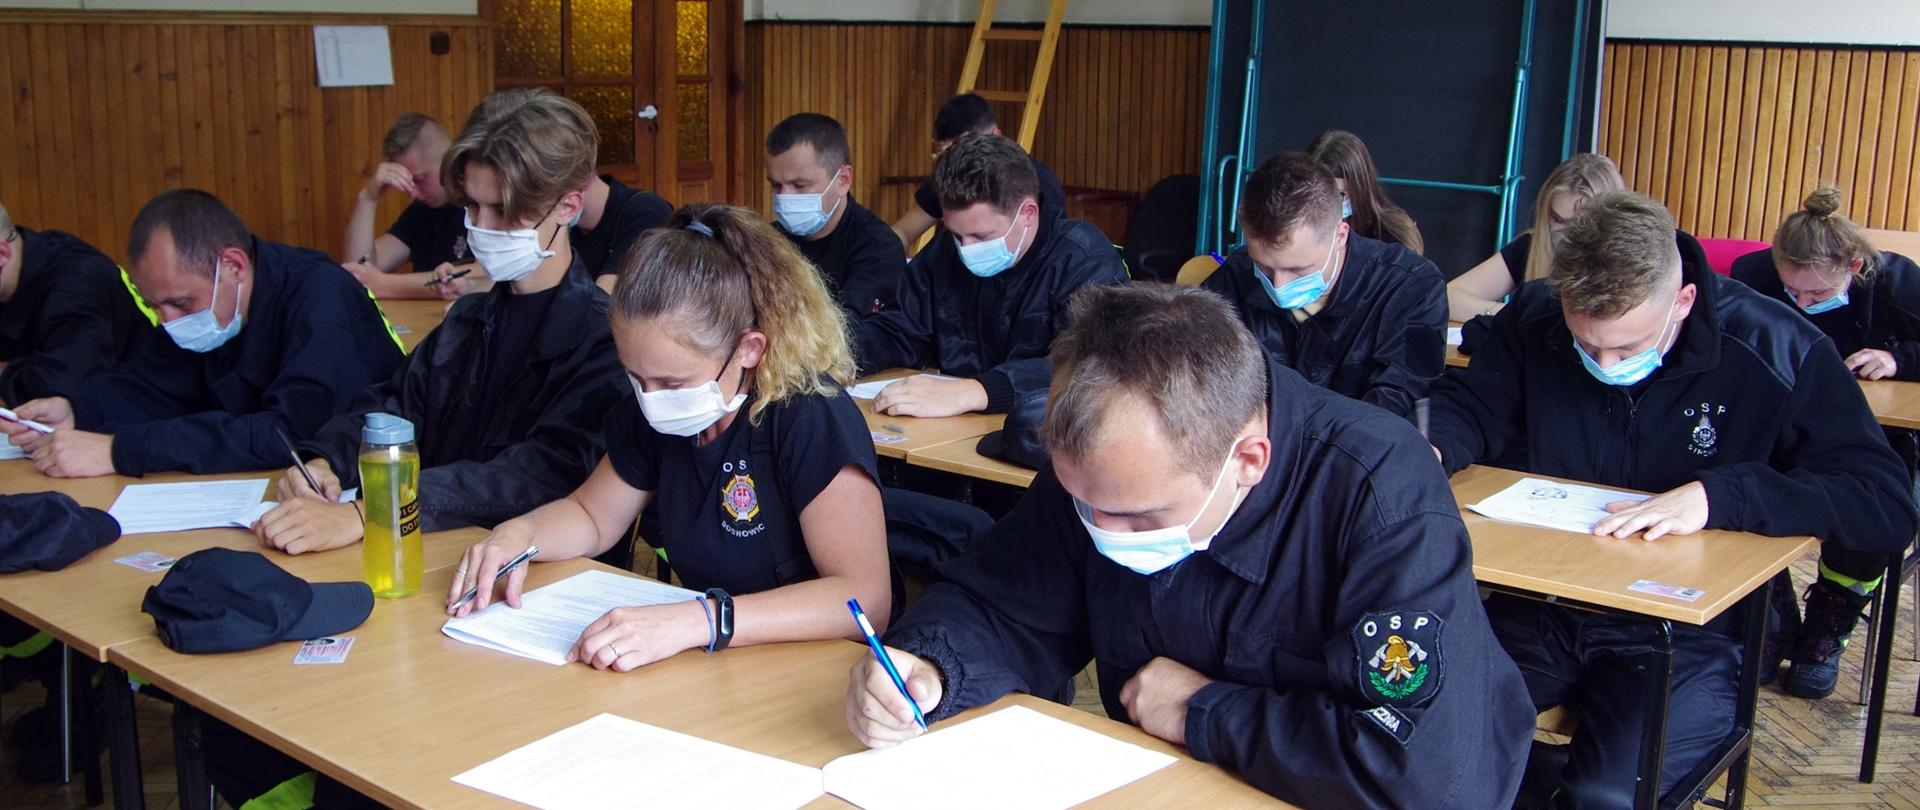 Widok z boku. Członkowie OSP w ubraniach koszarowych i maseczkach ochronnych siedzą w ławkach na sali szkoleniowej i rozwiązują test wiedzy.